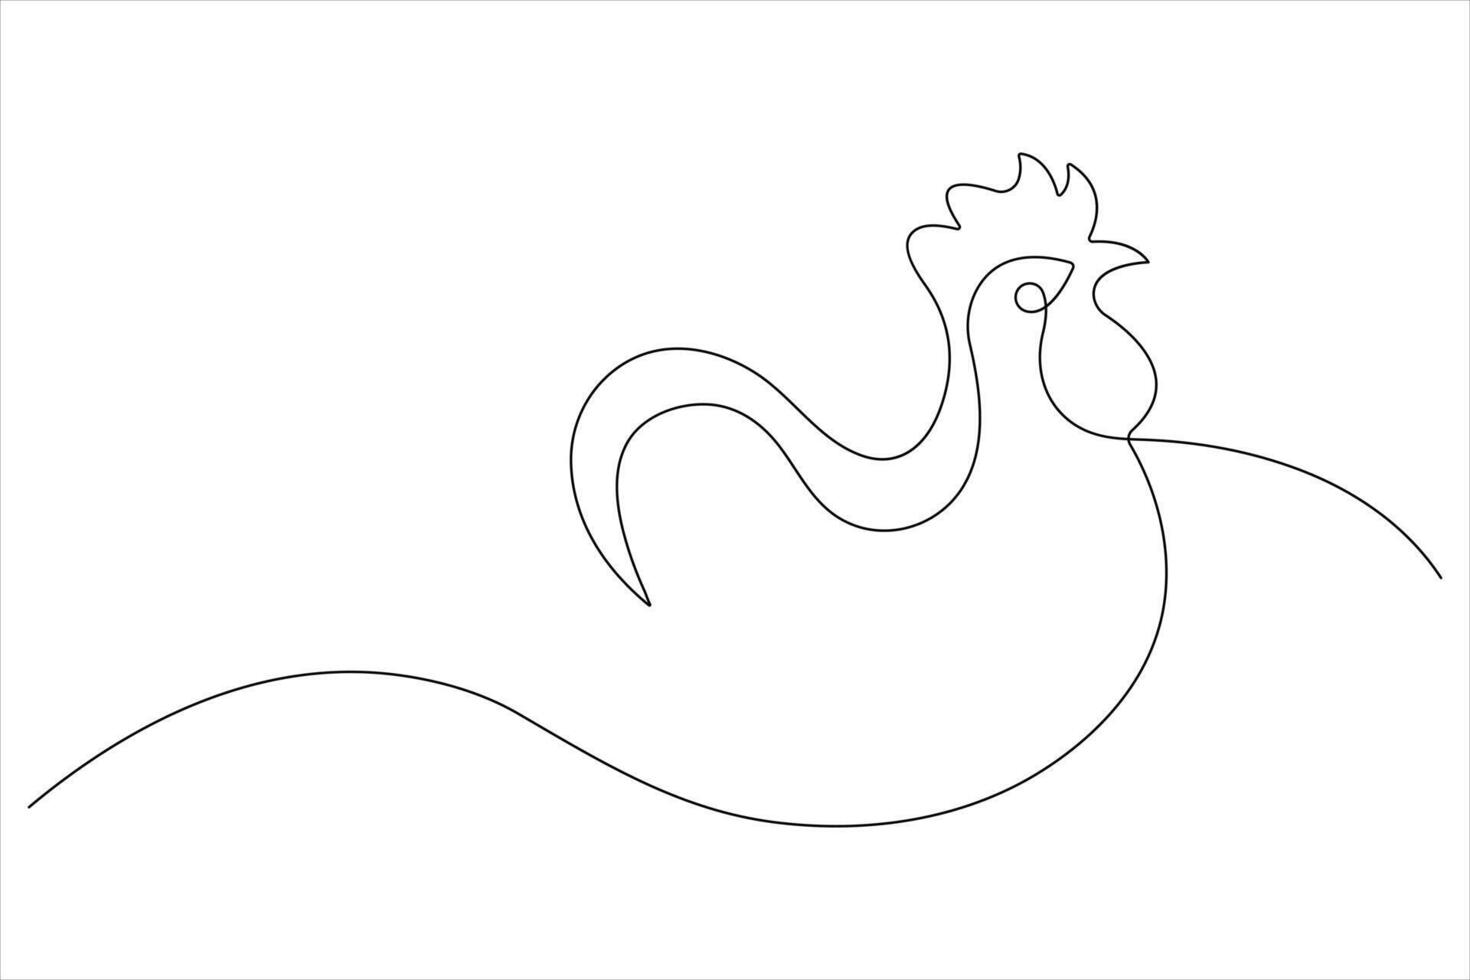 continuo uno linea arte disegno di animale domestico animale pollo concetto schema vettore illustrazione